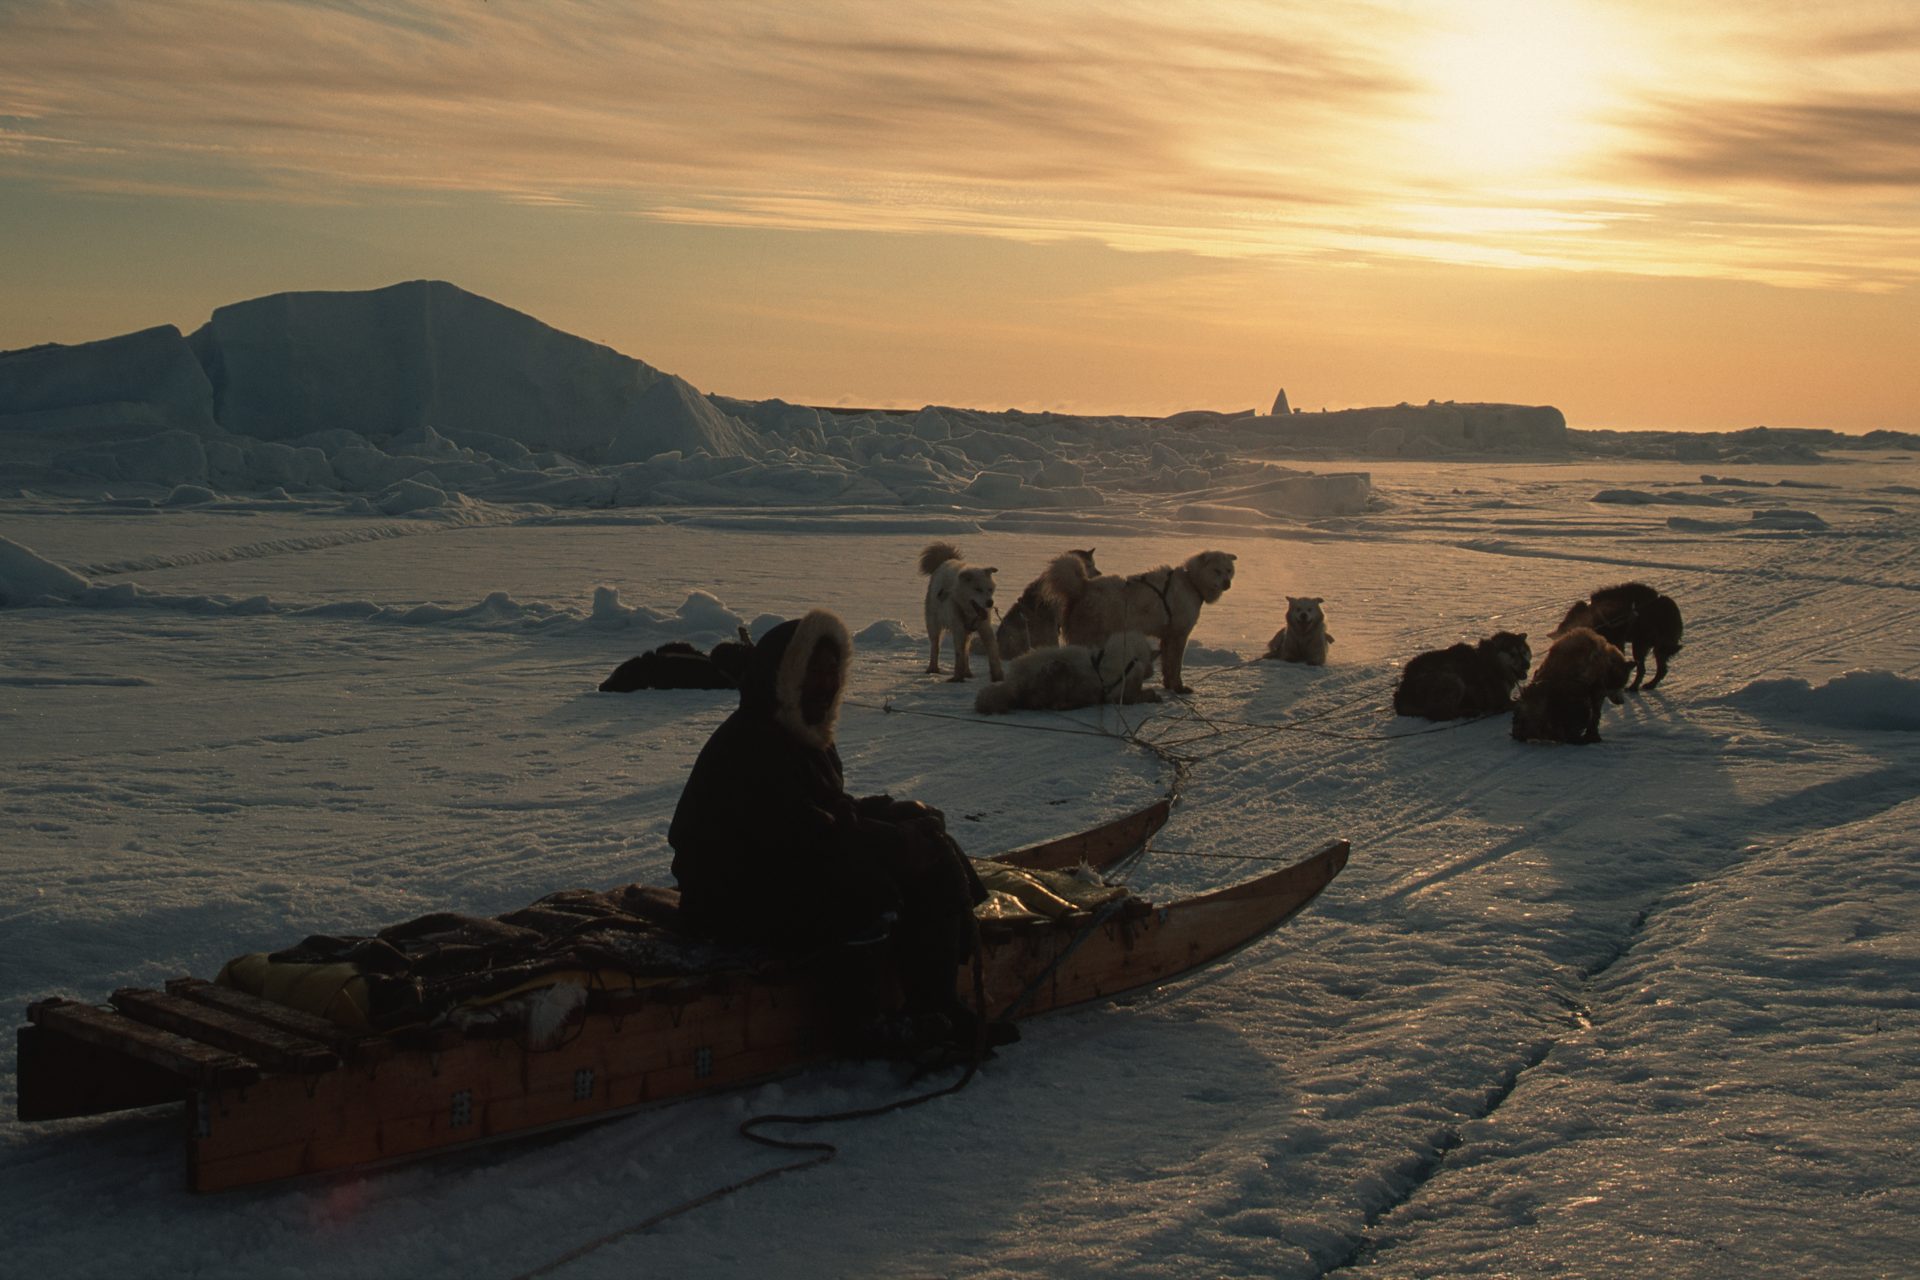 Nunavut records down to -32ºC